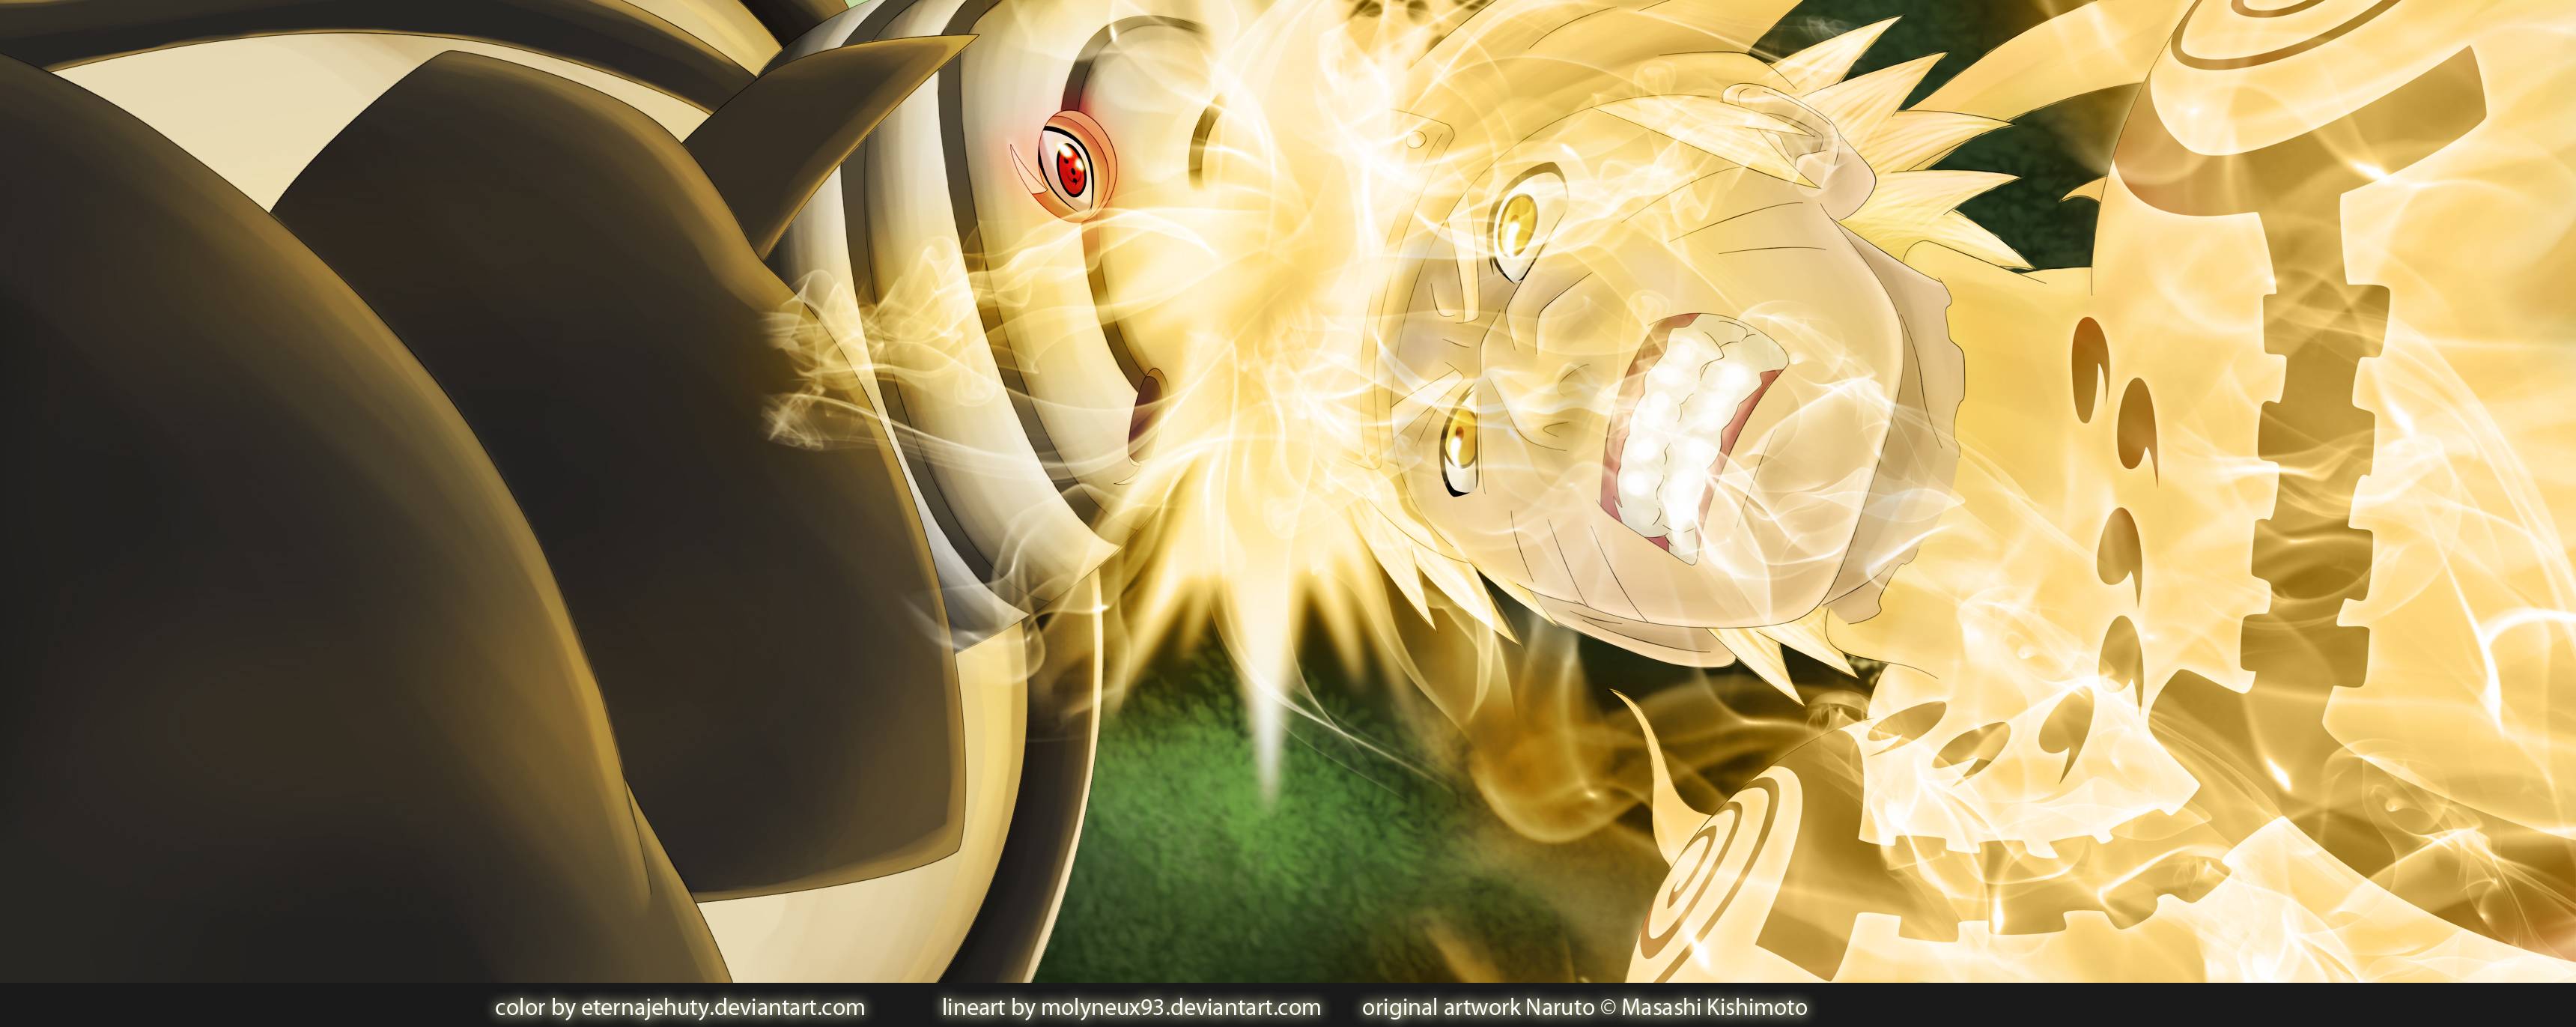 Naruto Vs Madara Wallpaper HD Image